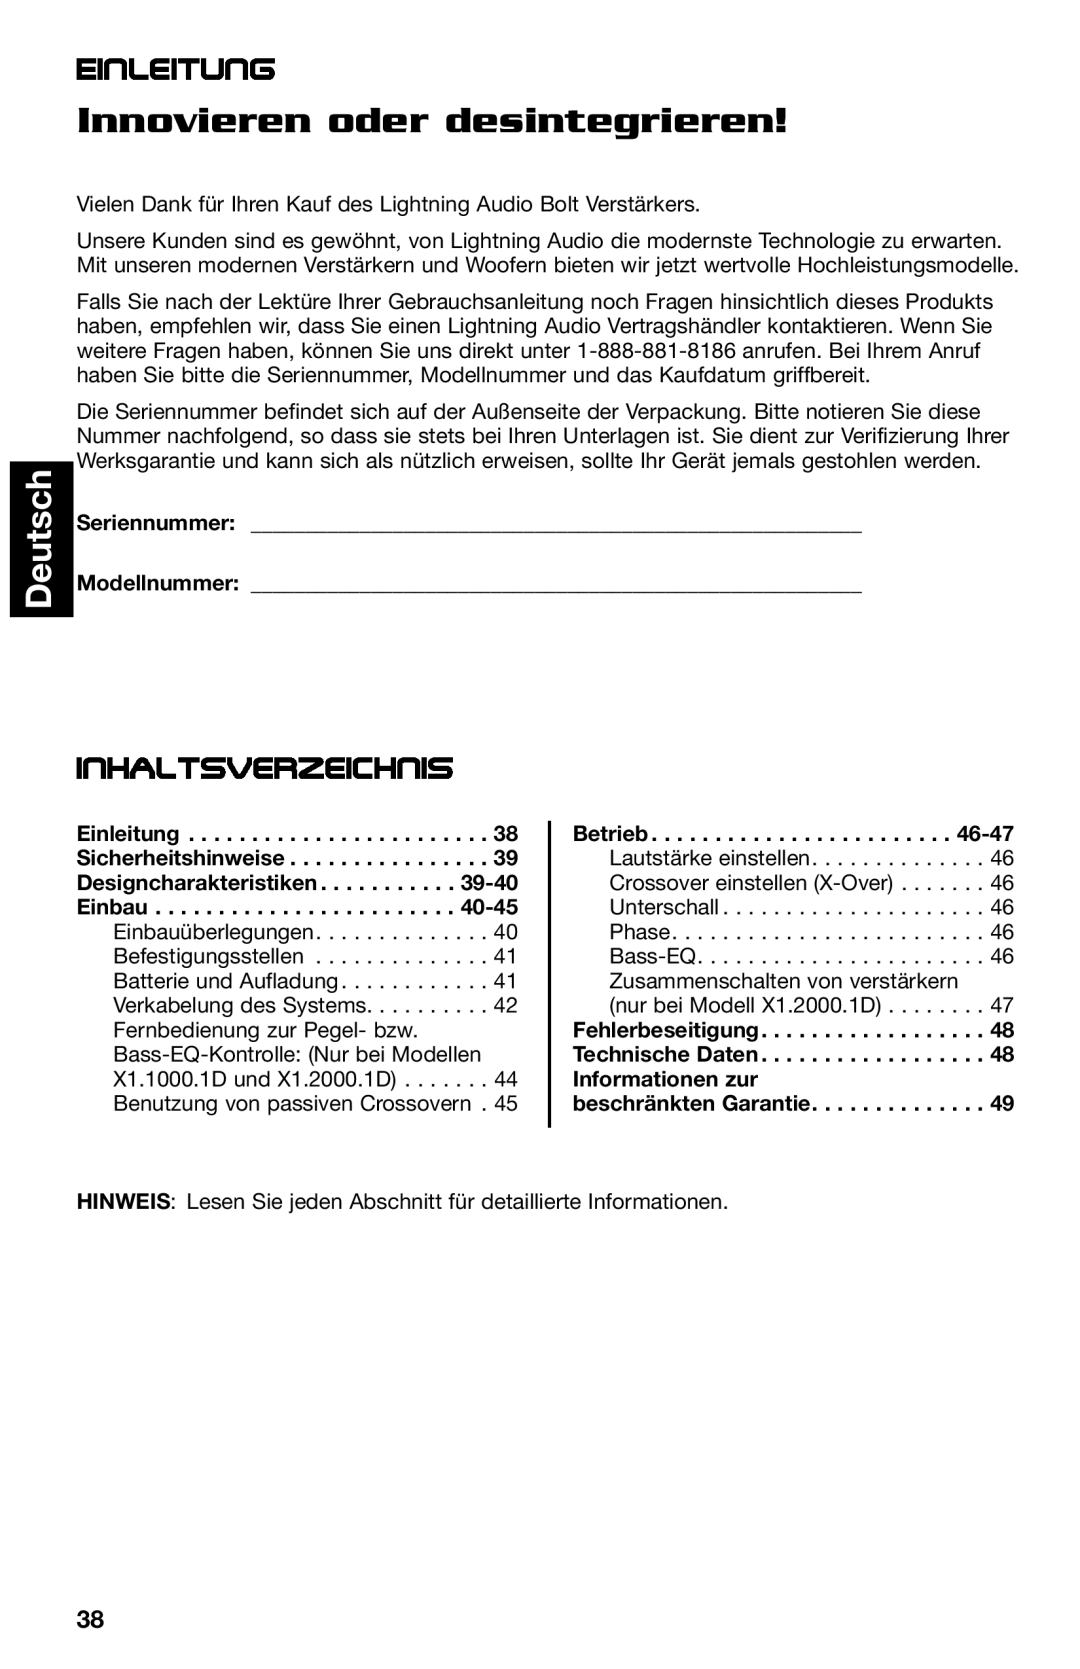 Lightning Audio X1.2000.1D, X1.800.4, X1.400.2 manual Innovieren oder desintegrieren, Deutsch, Einleitung, Inhaltsverzeichnis 